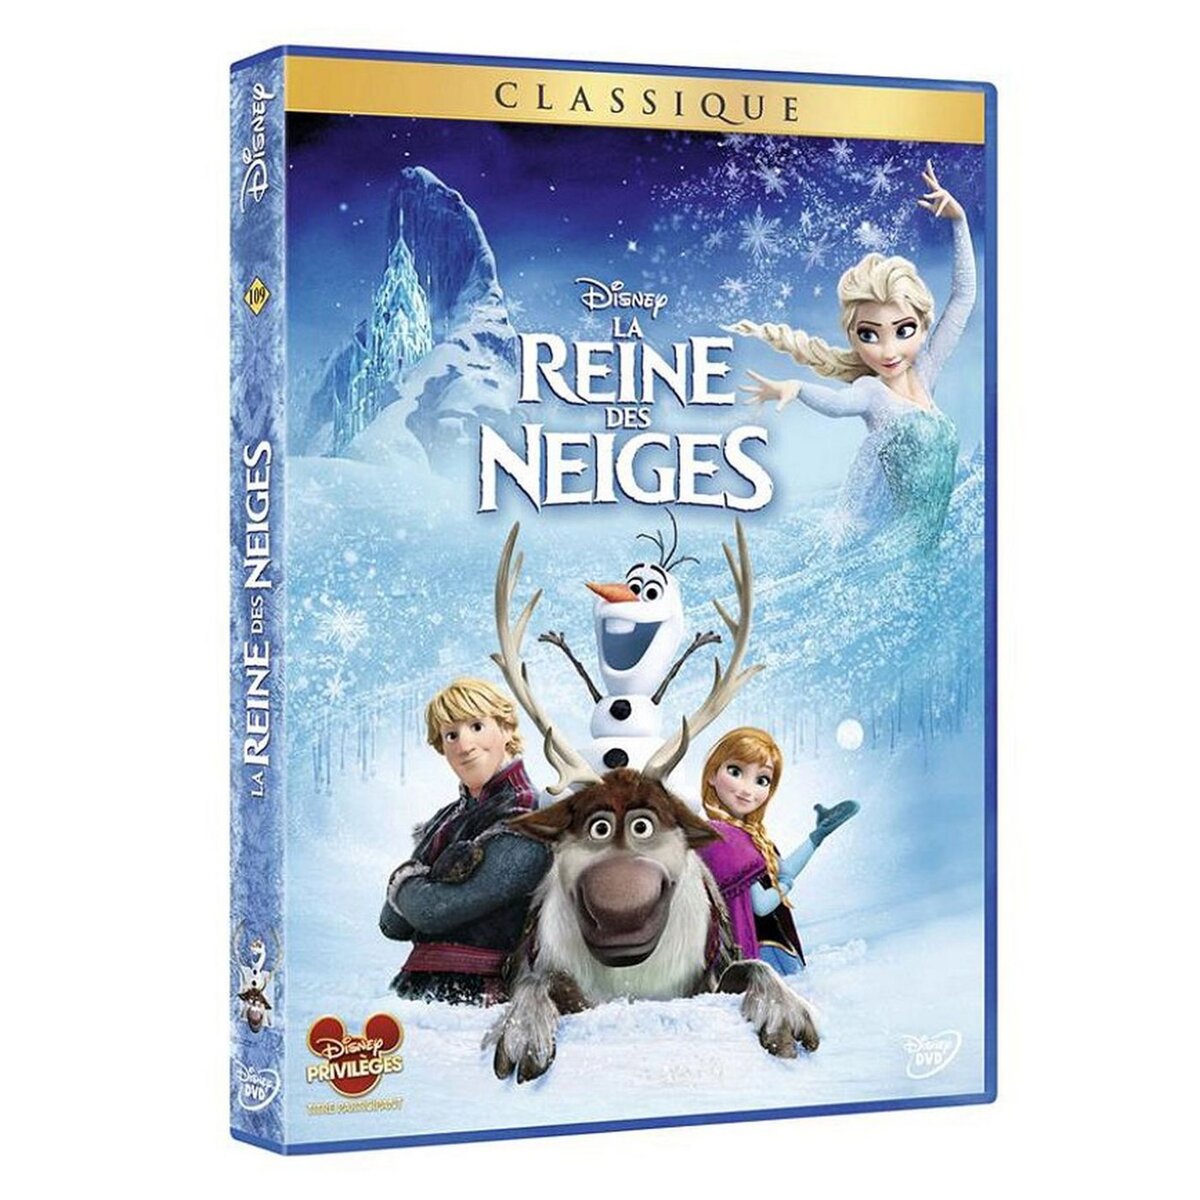 La reine des neiges DVD (2013)